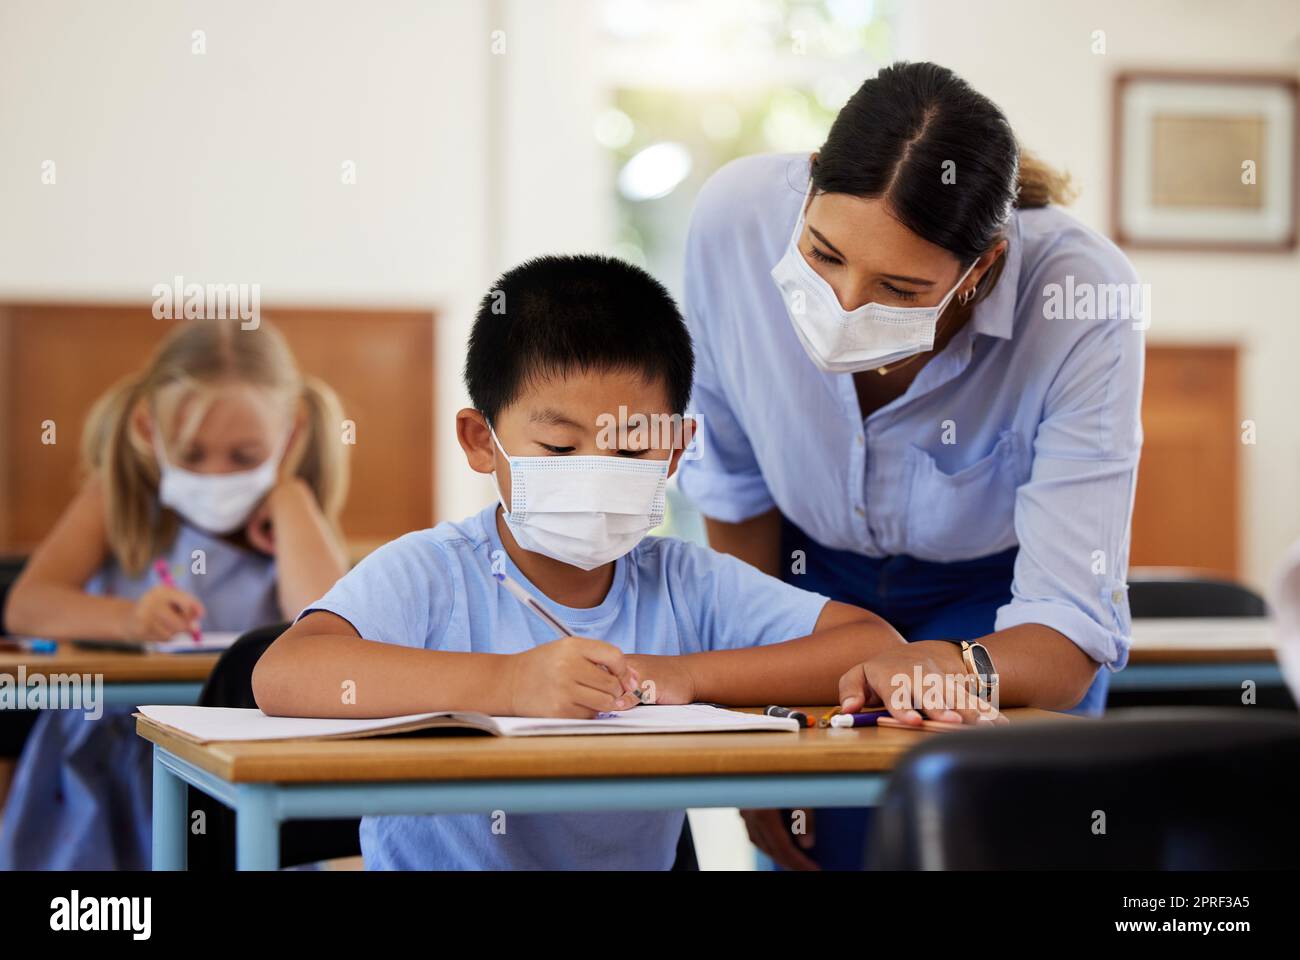 Covid, Bildung und Lernen mit einem Lehrer, der eine Maske trägt und einem männlichen Schüler während der Schule hilft. Ein Junge, der in einem Klassenzimmer lernt, mit Hilfe eines Pädagogen, während er an seinem Schreibtisch sitzt. Stockfoto